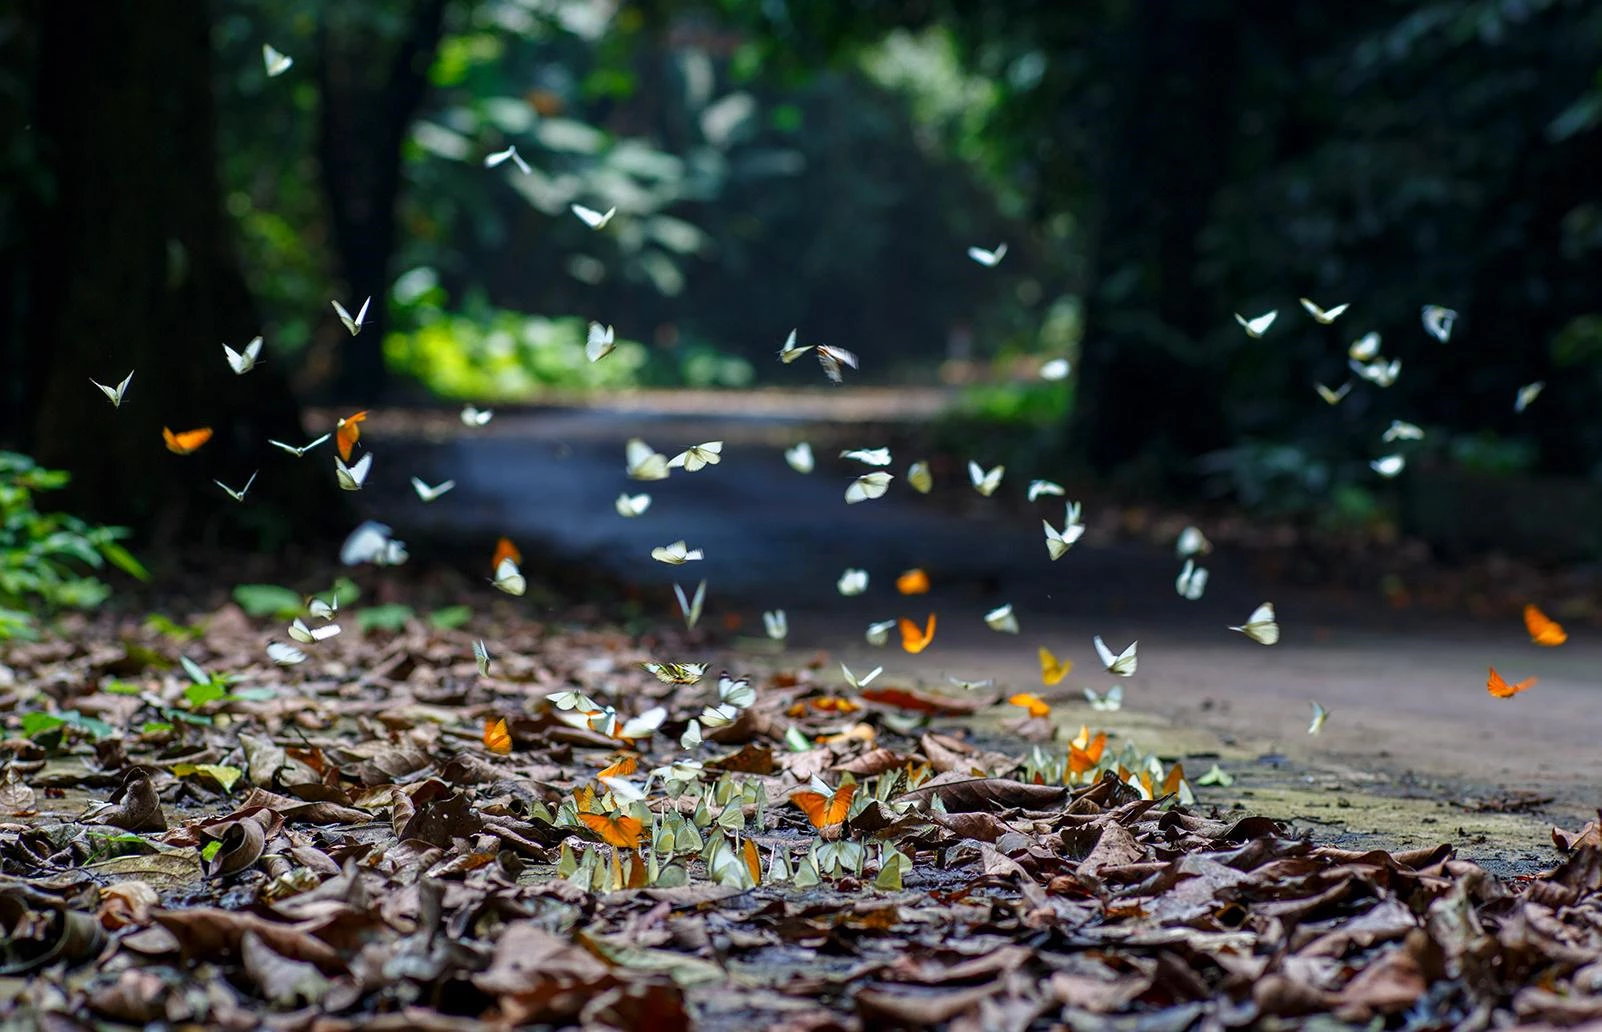 Nằm tại Ninh Bình, vườn quốc gia Cúc Phương có thể khám phá bằng cách đi bộ, xe máy hoặc xe đạp, bạn sẽ choáng ngợp và có những hình ảnh đẹp nếu đến đây vào mùa bướm